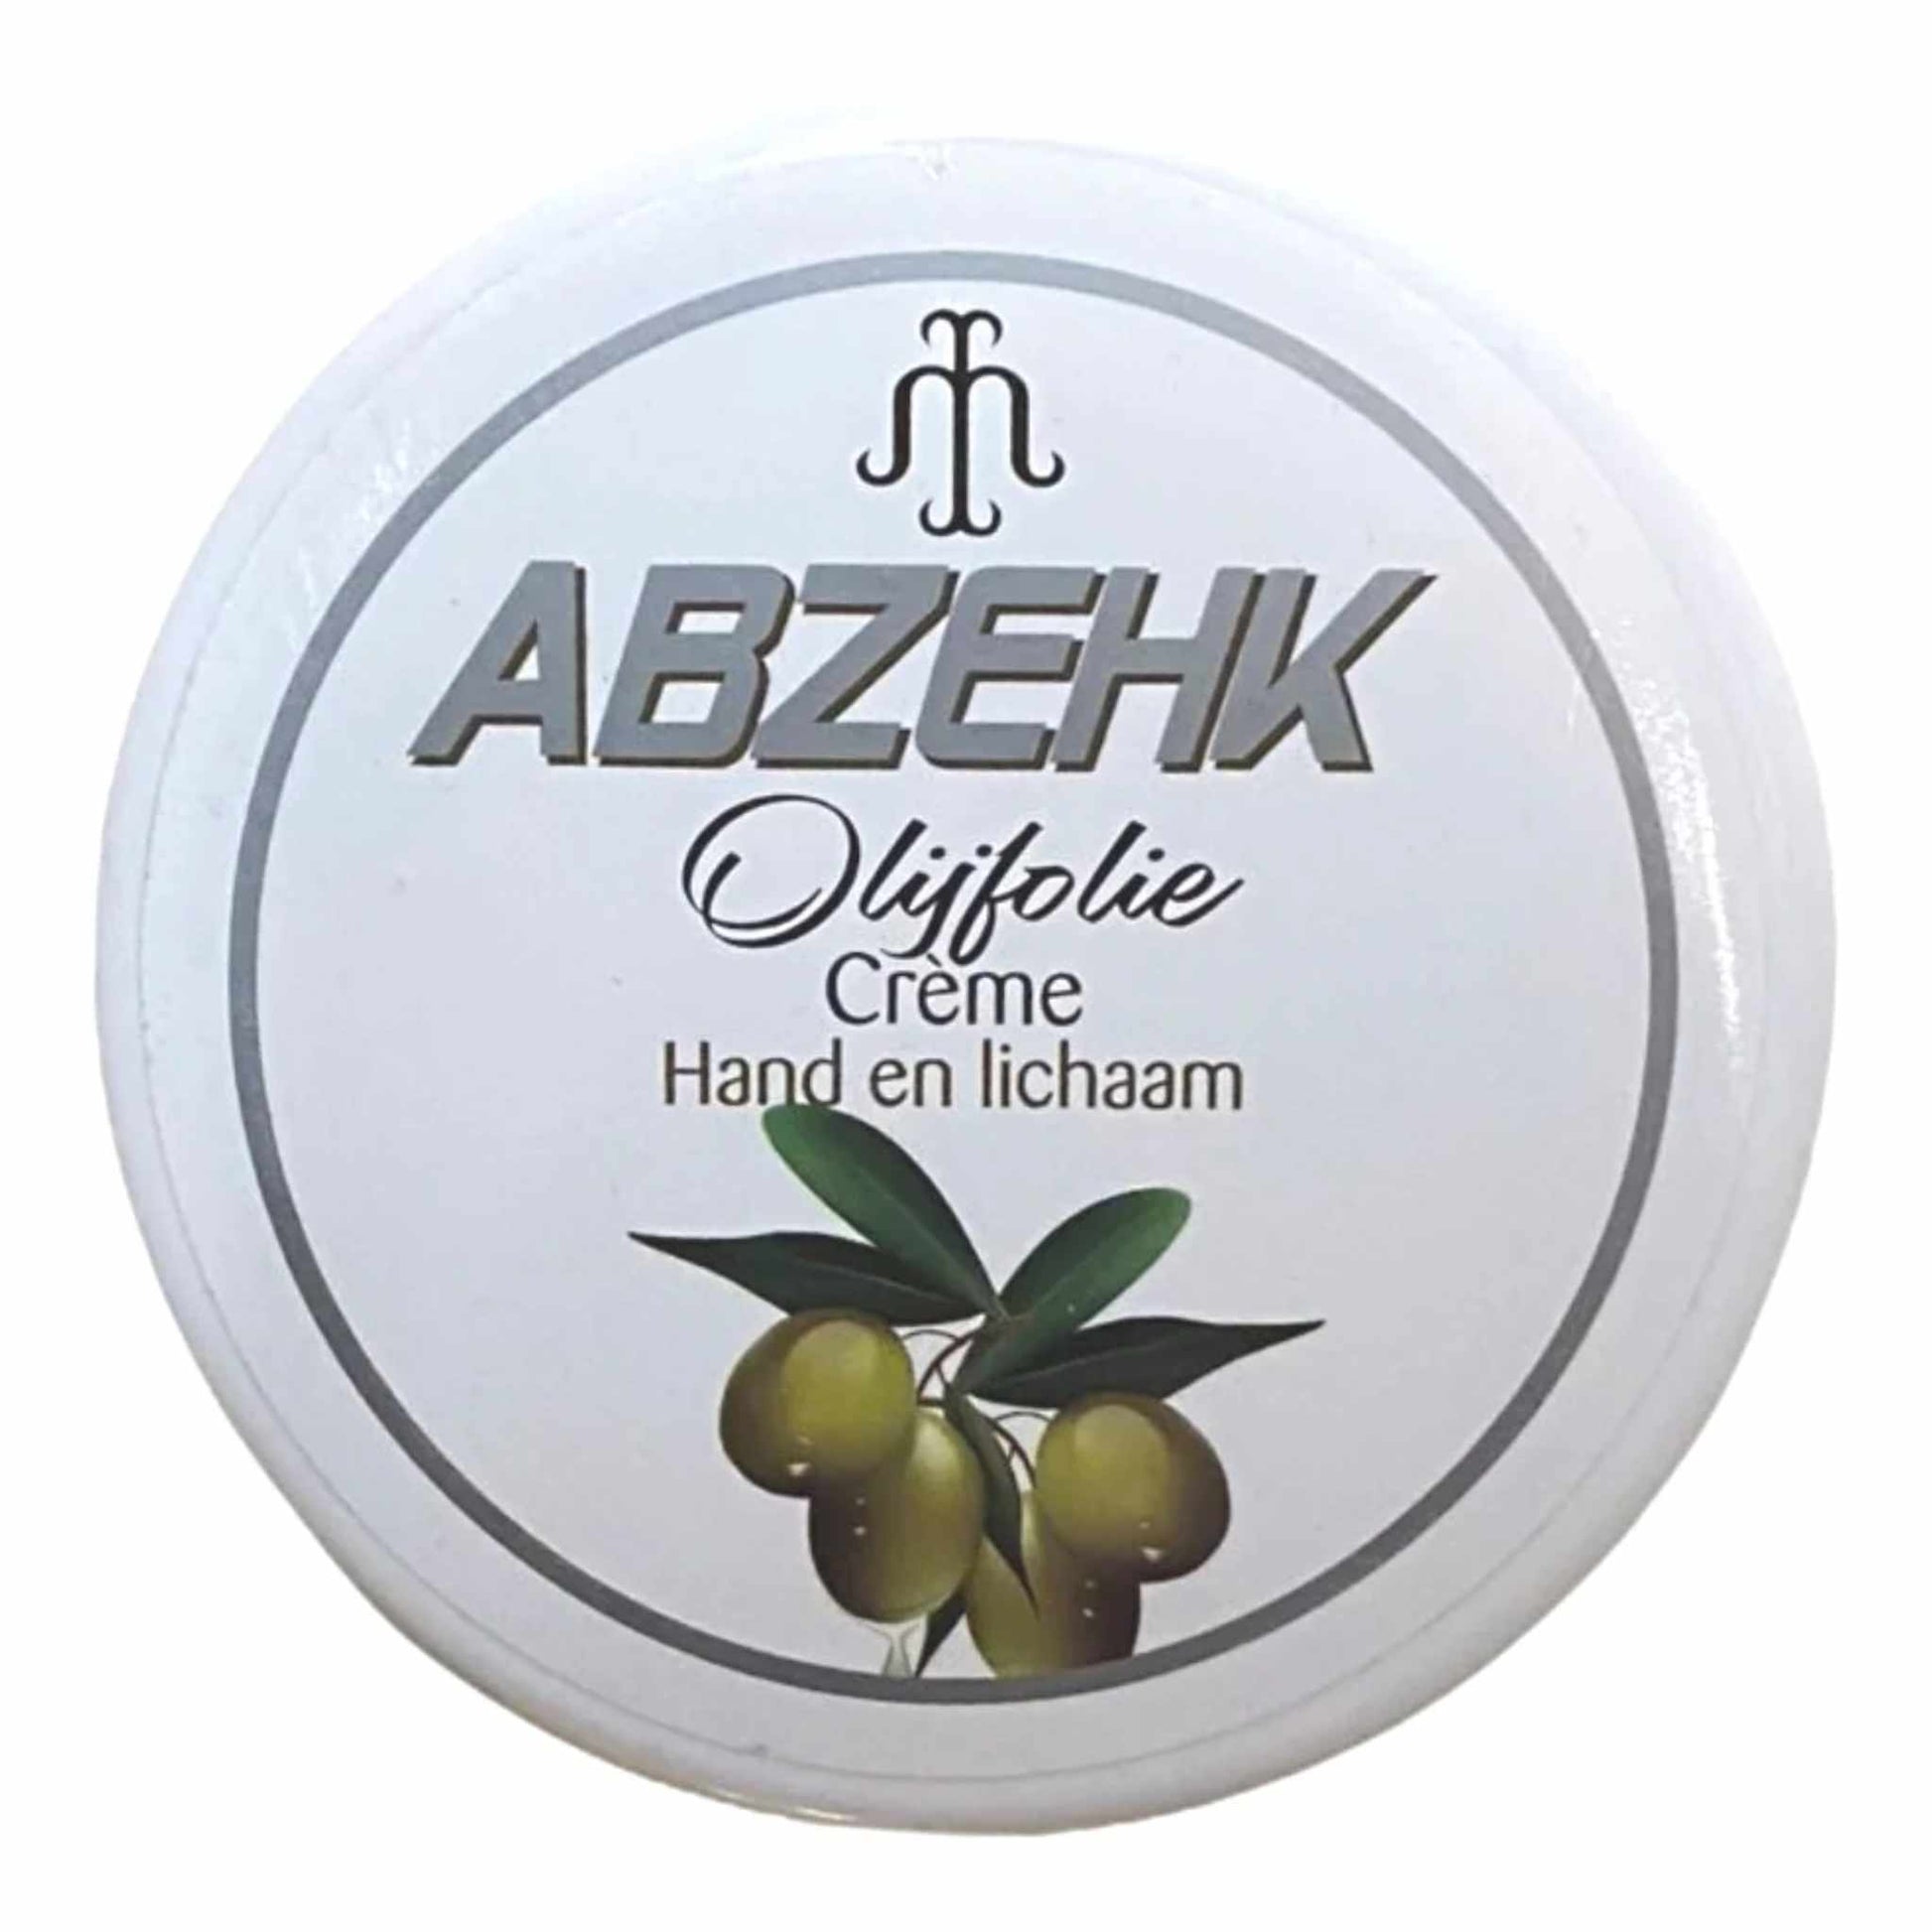 Abzehk Hand en Lichaamscreme Olijfolie 250 ml